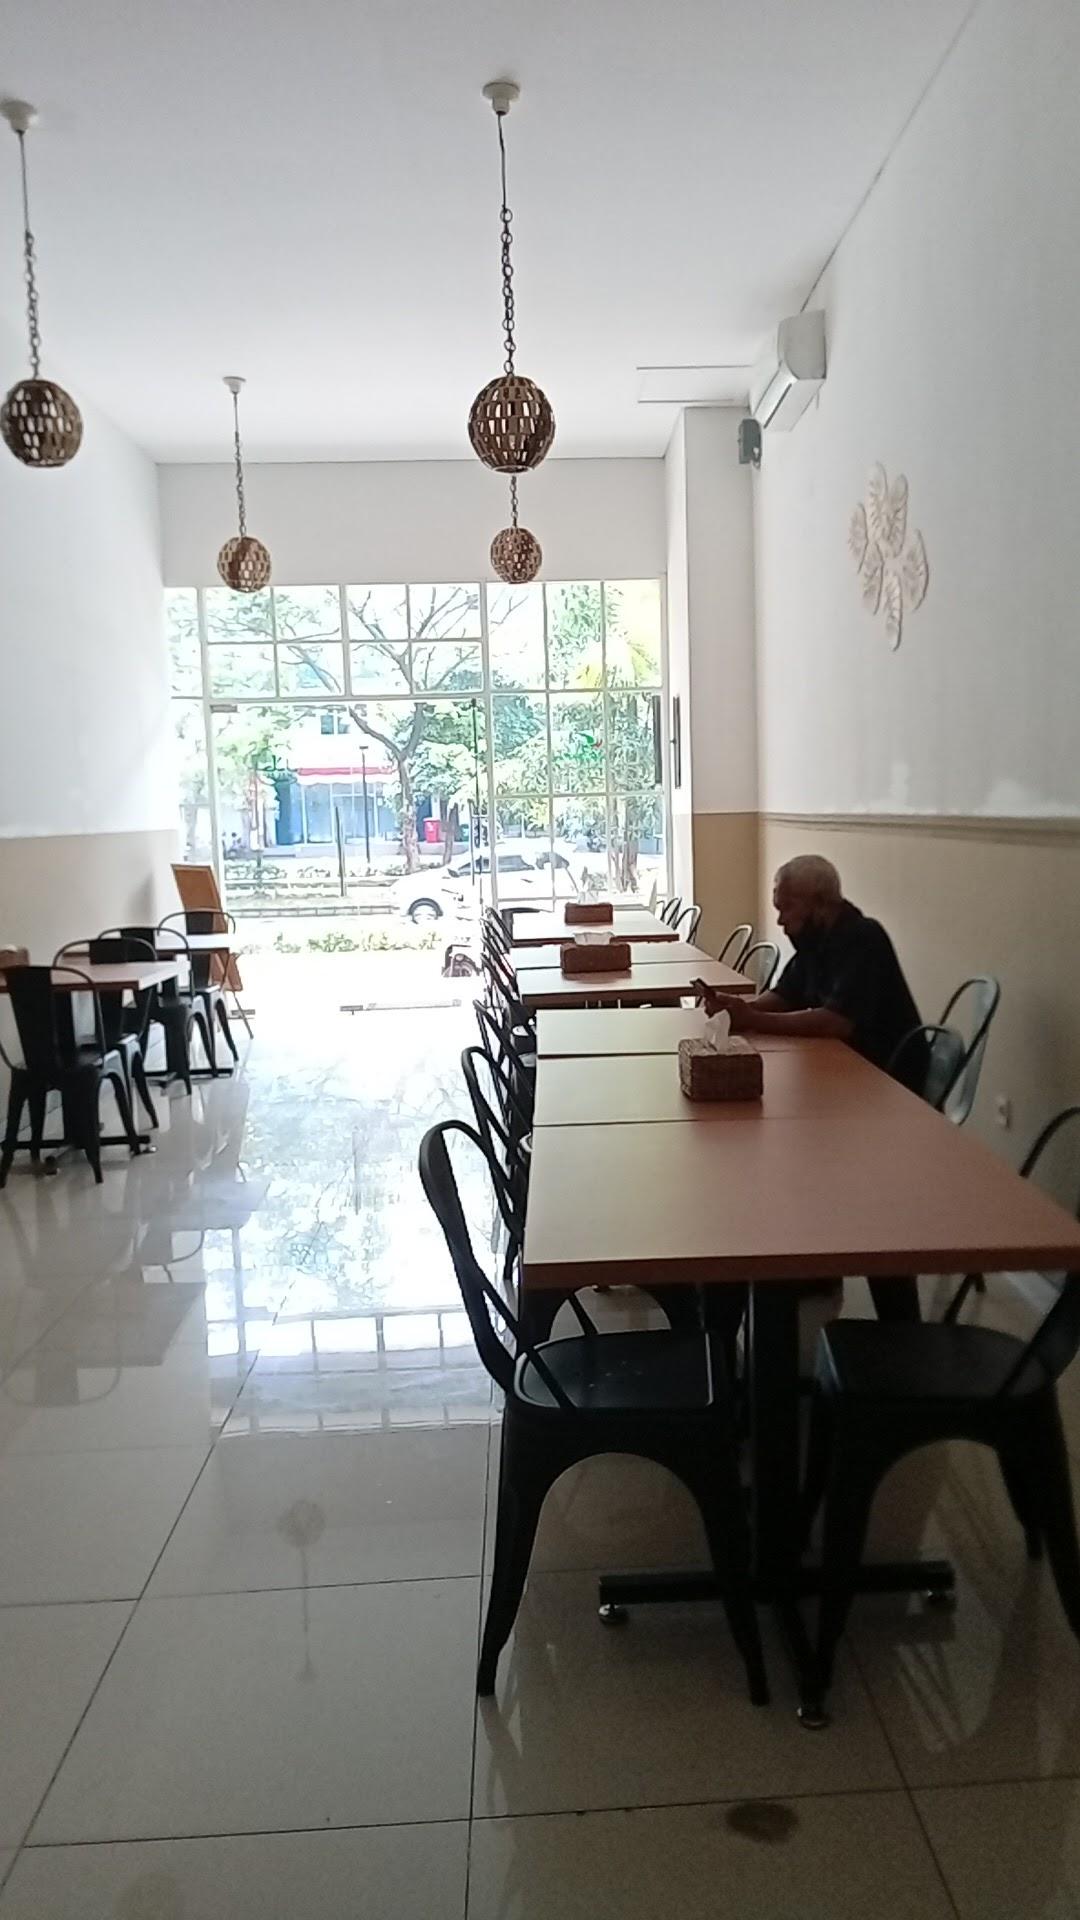 Restoran Sunda Khas Purwakarta Southcity D/H Ibu Haji Ciganea review